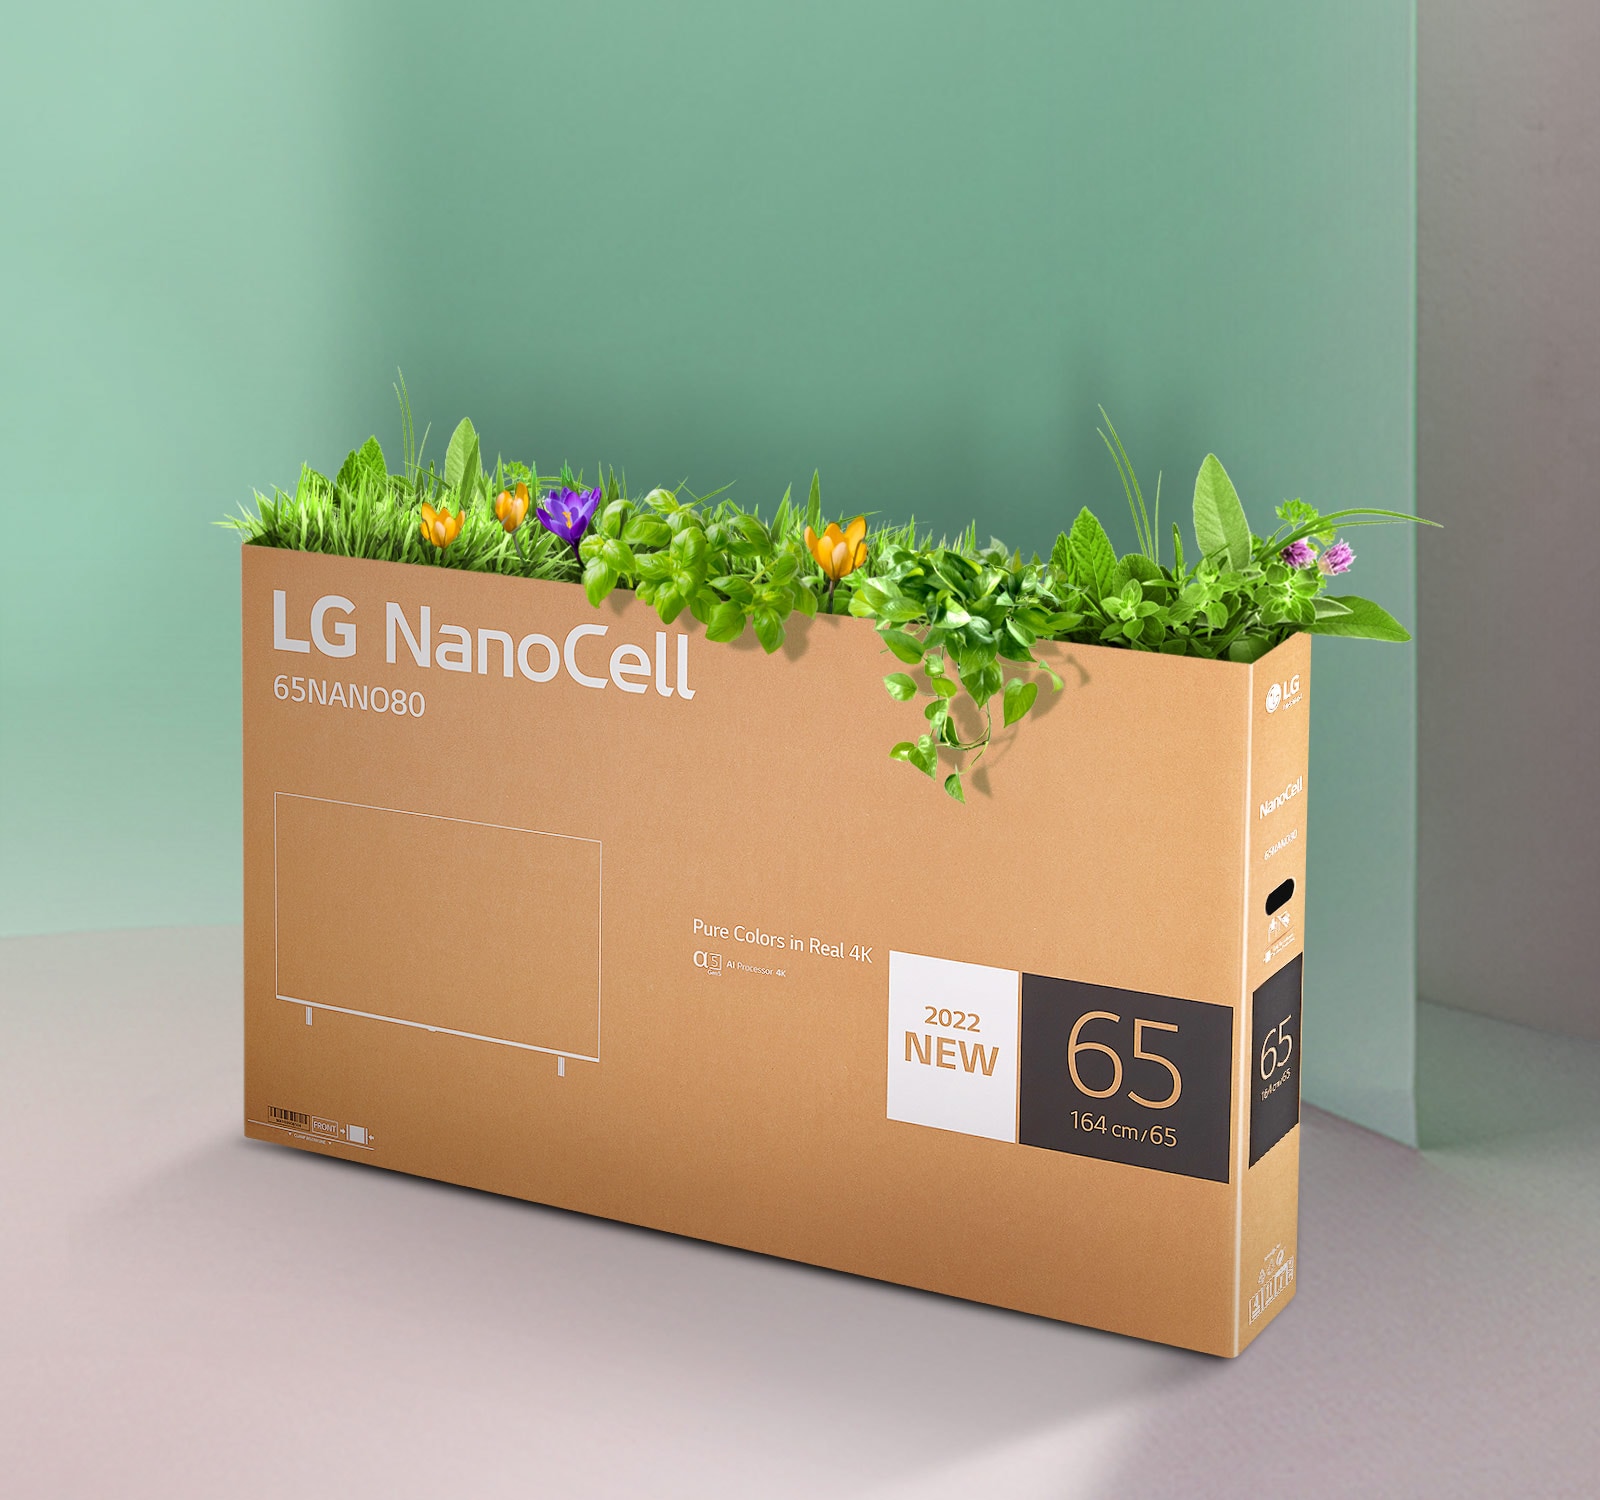 Cutia reciclabila a televizorului LG NanoCell cu flori si plante care ies din partea de sus a cutiei.